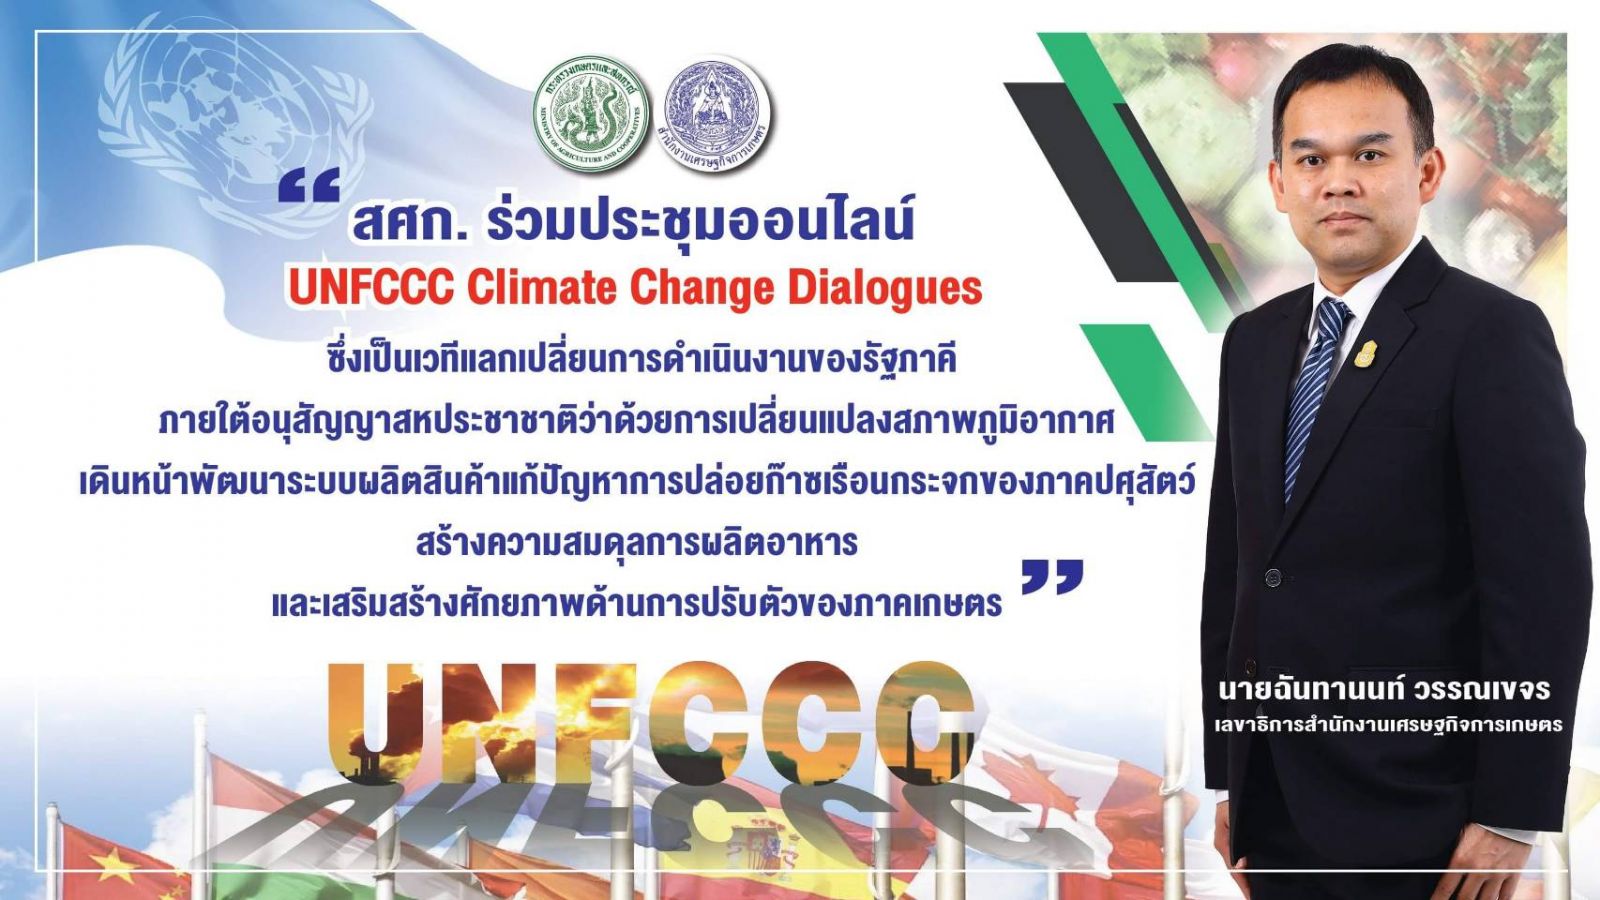 สศก. ร่วมเวทีออนไลน์ UNFCCC Climate Change Dialogues  ถกประเด็นท้าทาย การผลิตสินค้าปศุสัตว์ สร้างสมดุลการผลิตอาหาร รับมือการเปลี่ยนแปลงภูมิอากาศ